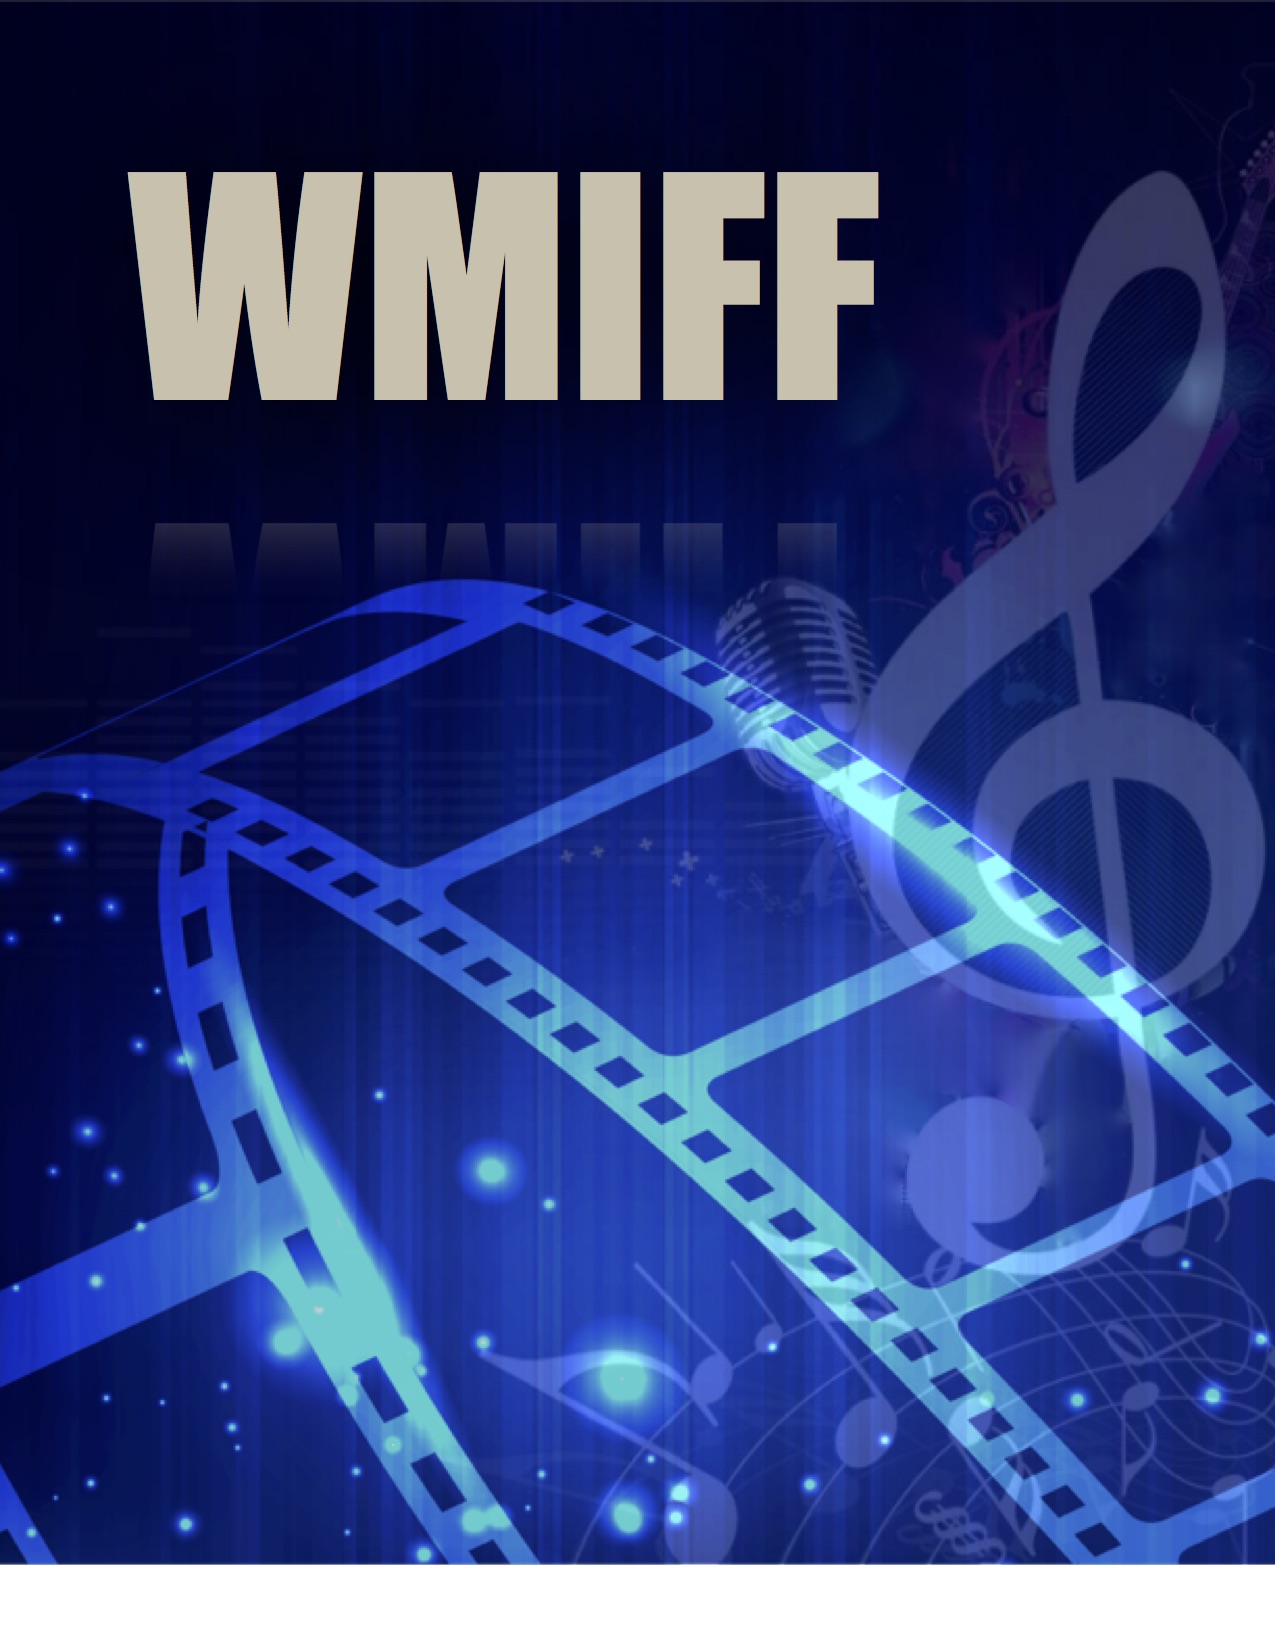 WMIFF Logo